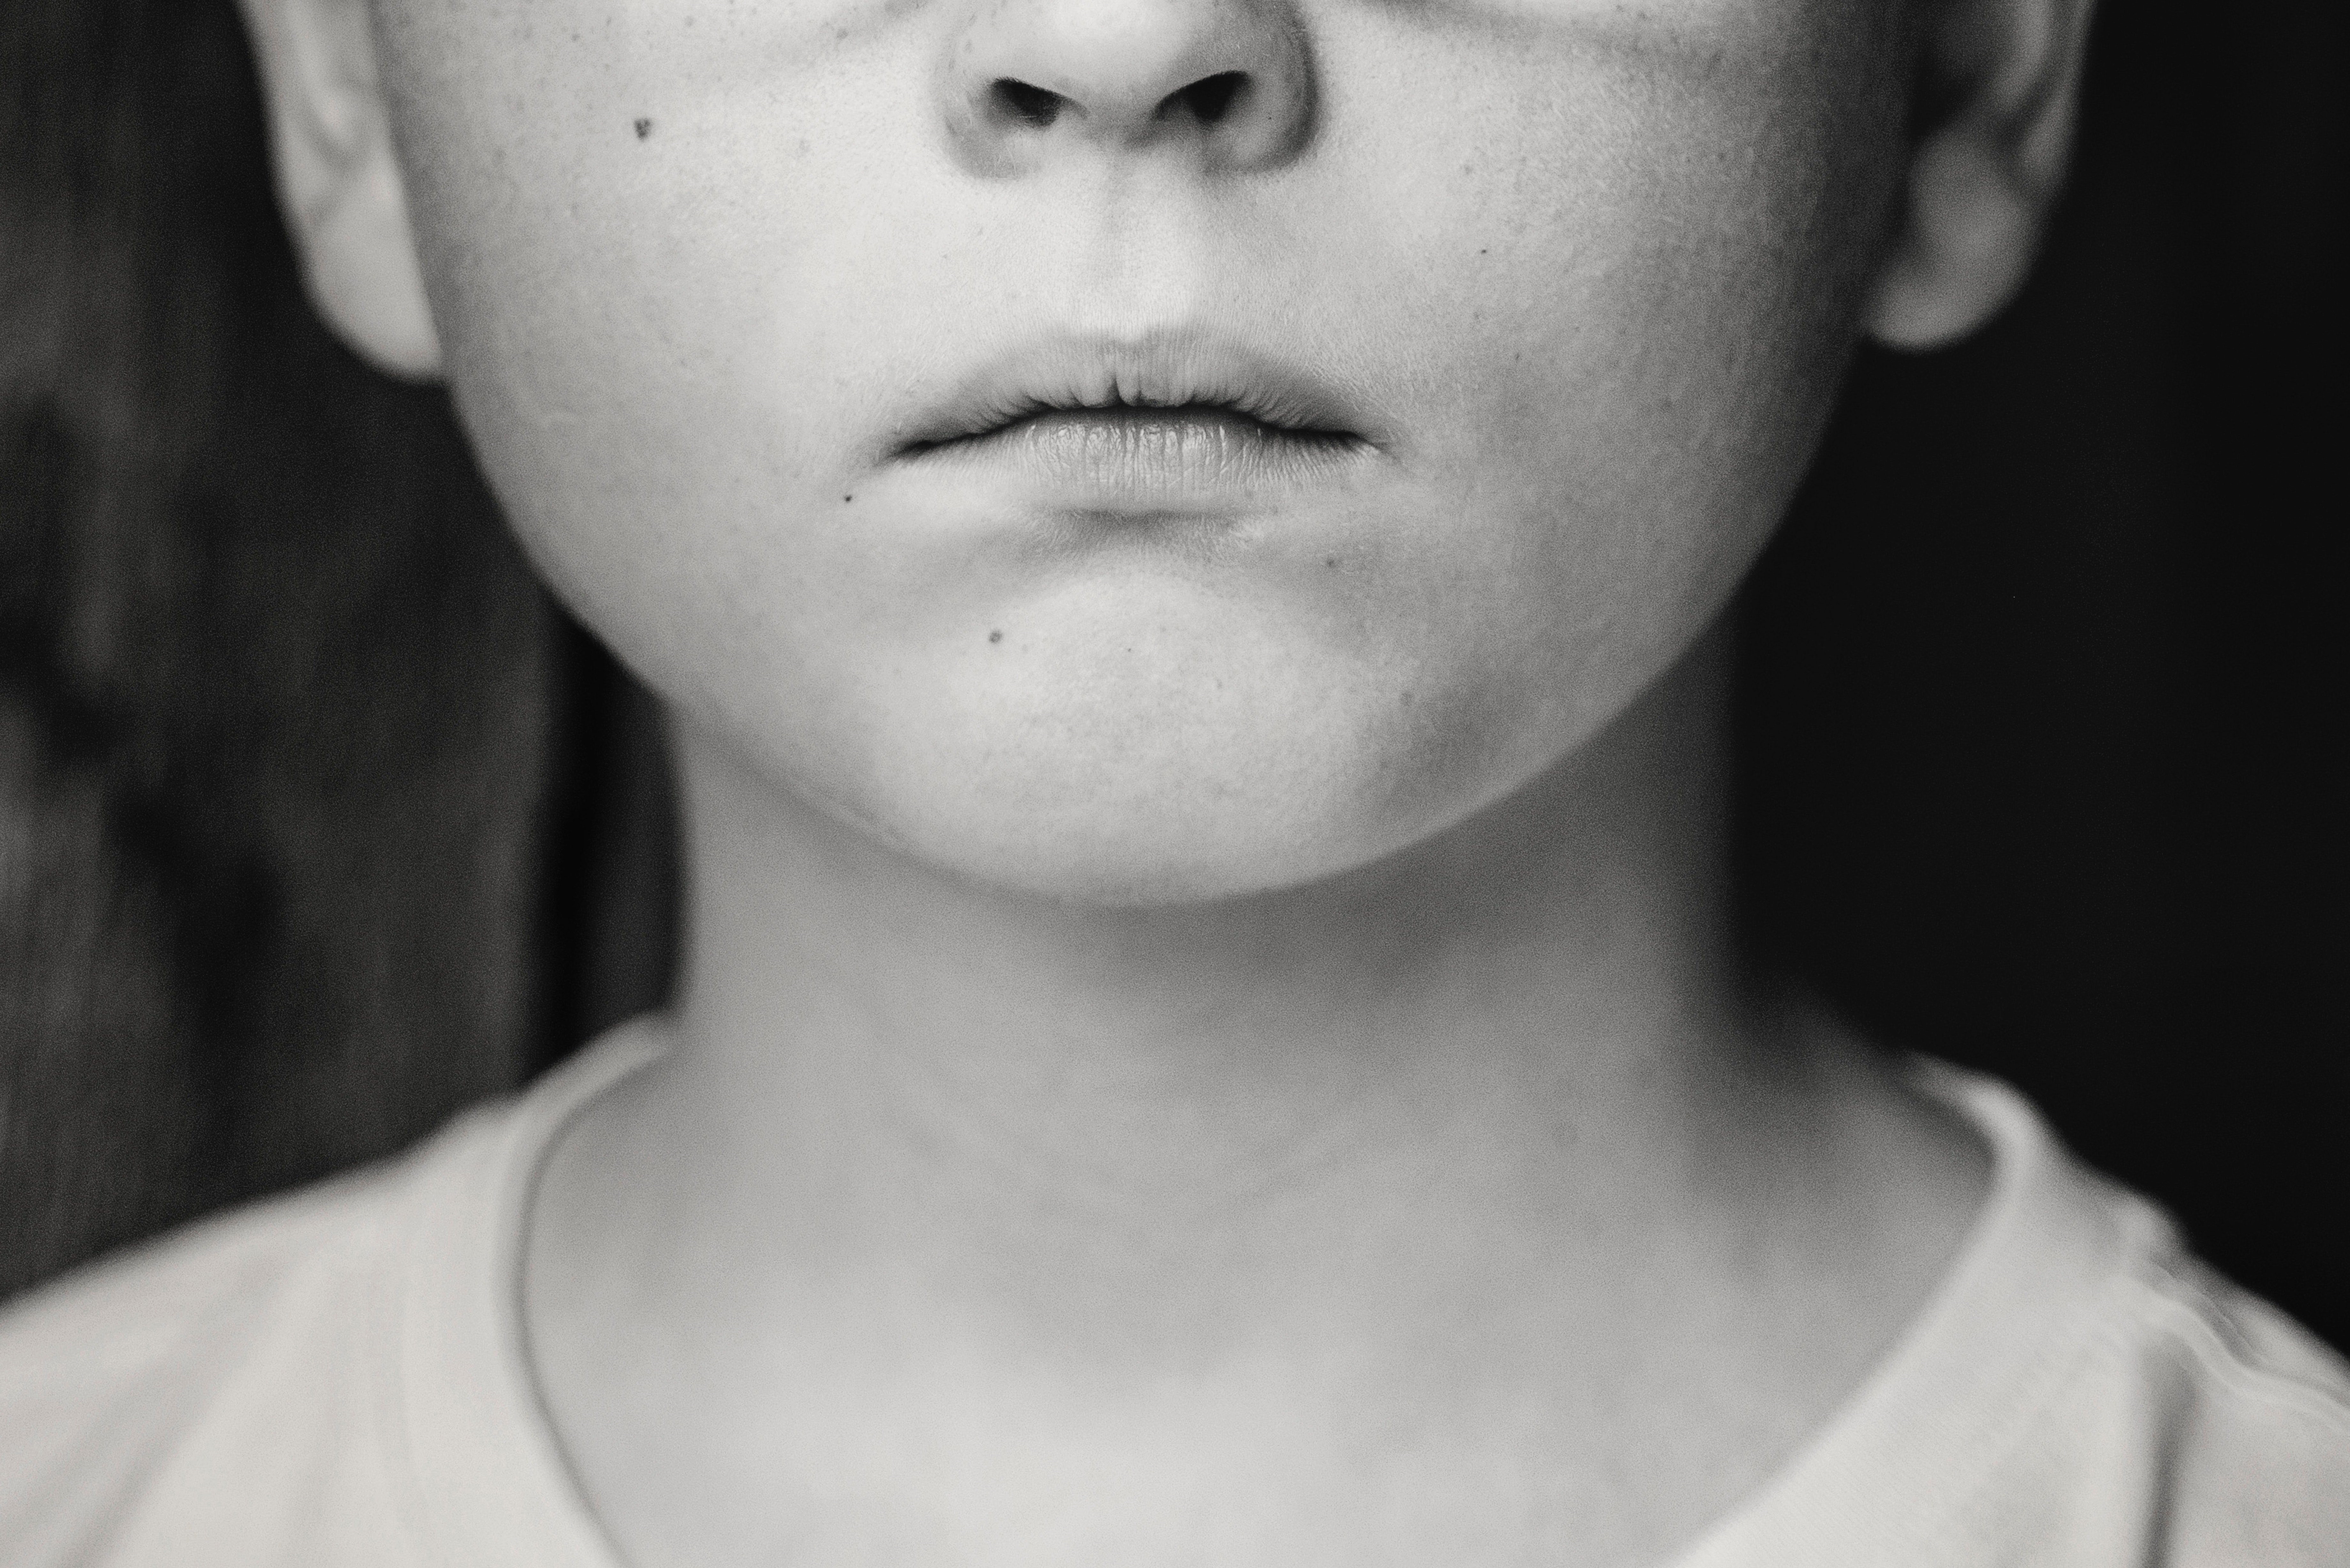 Schwarz-Weiß-Bild eines traurigen Jungen | Quelle: Pexels